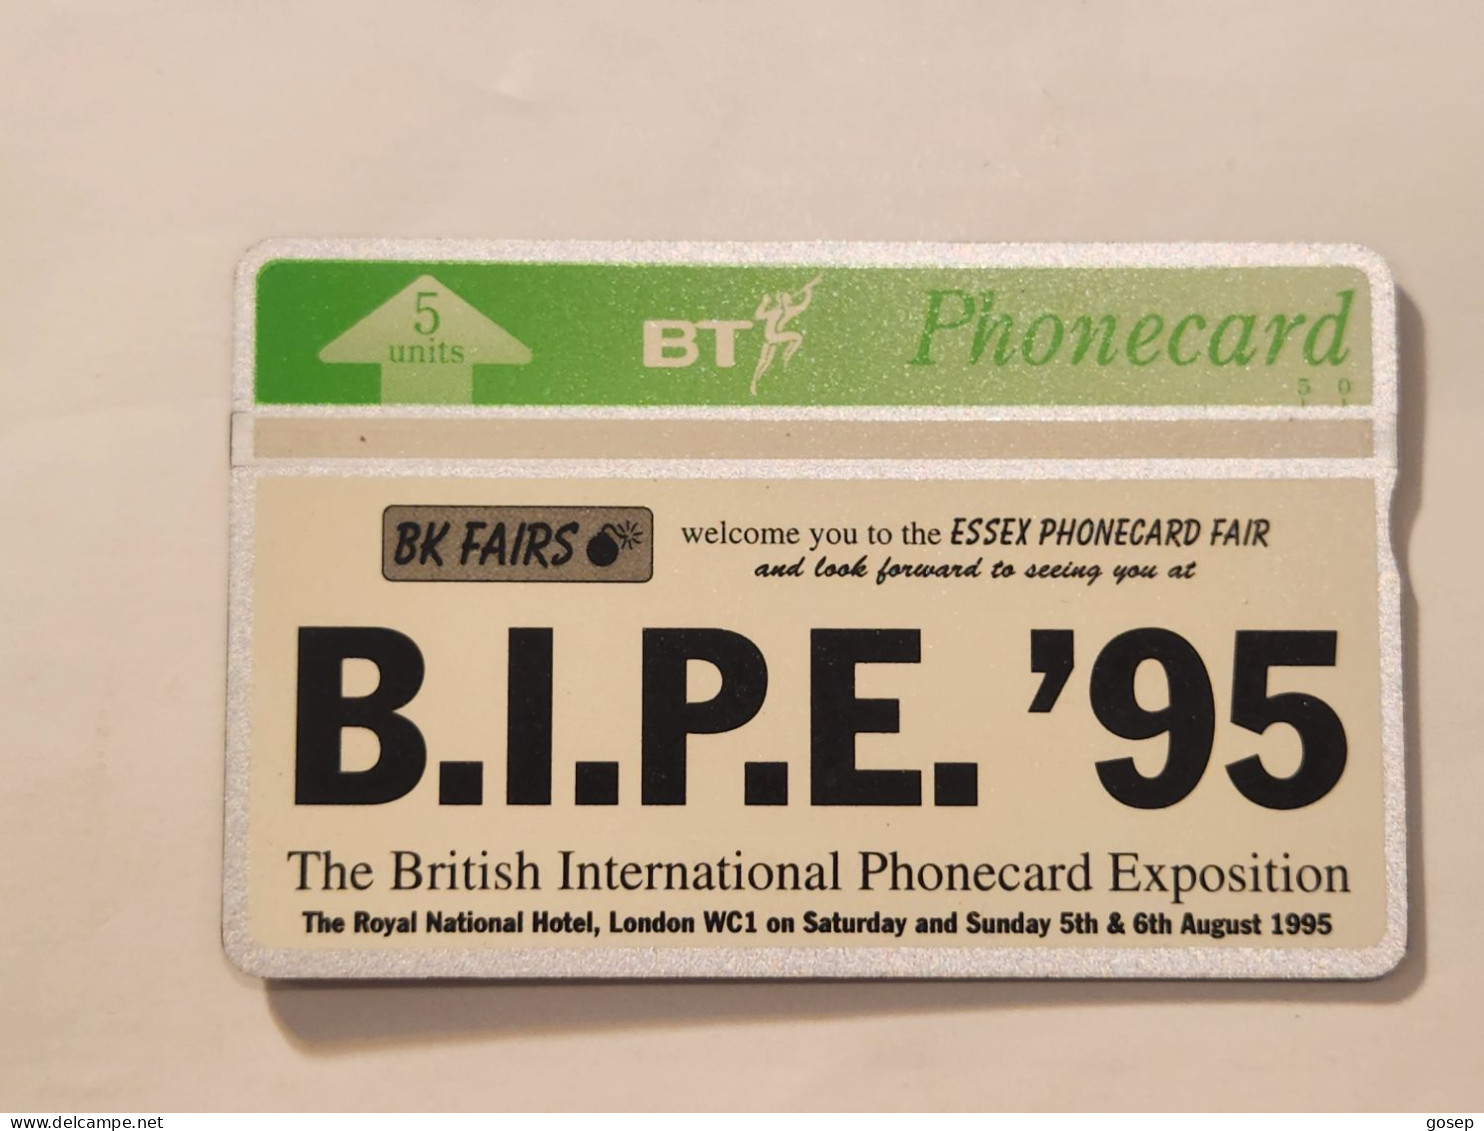 United Kingdom-(BTG-484)-Essex Phonecard Fair April-(409)(505B33924)(tirage-500)-price Cataloge-6.00£-mint - BT General Issues